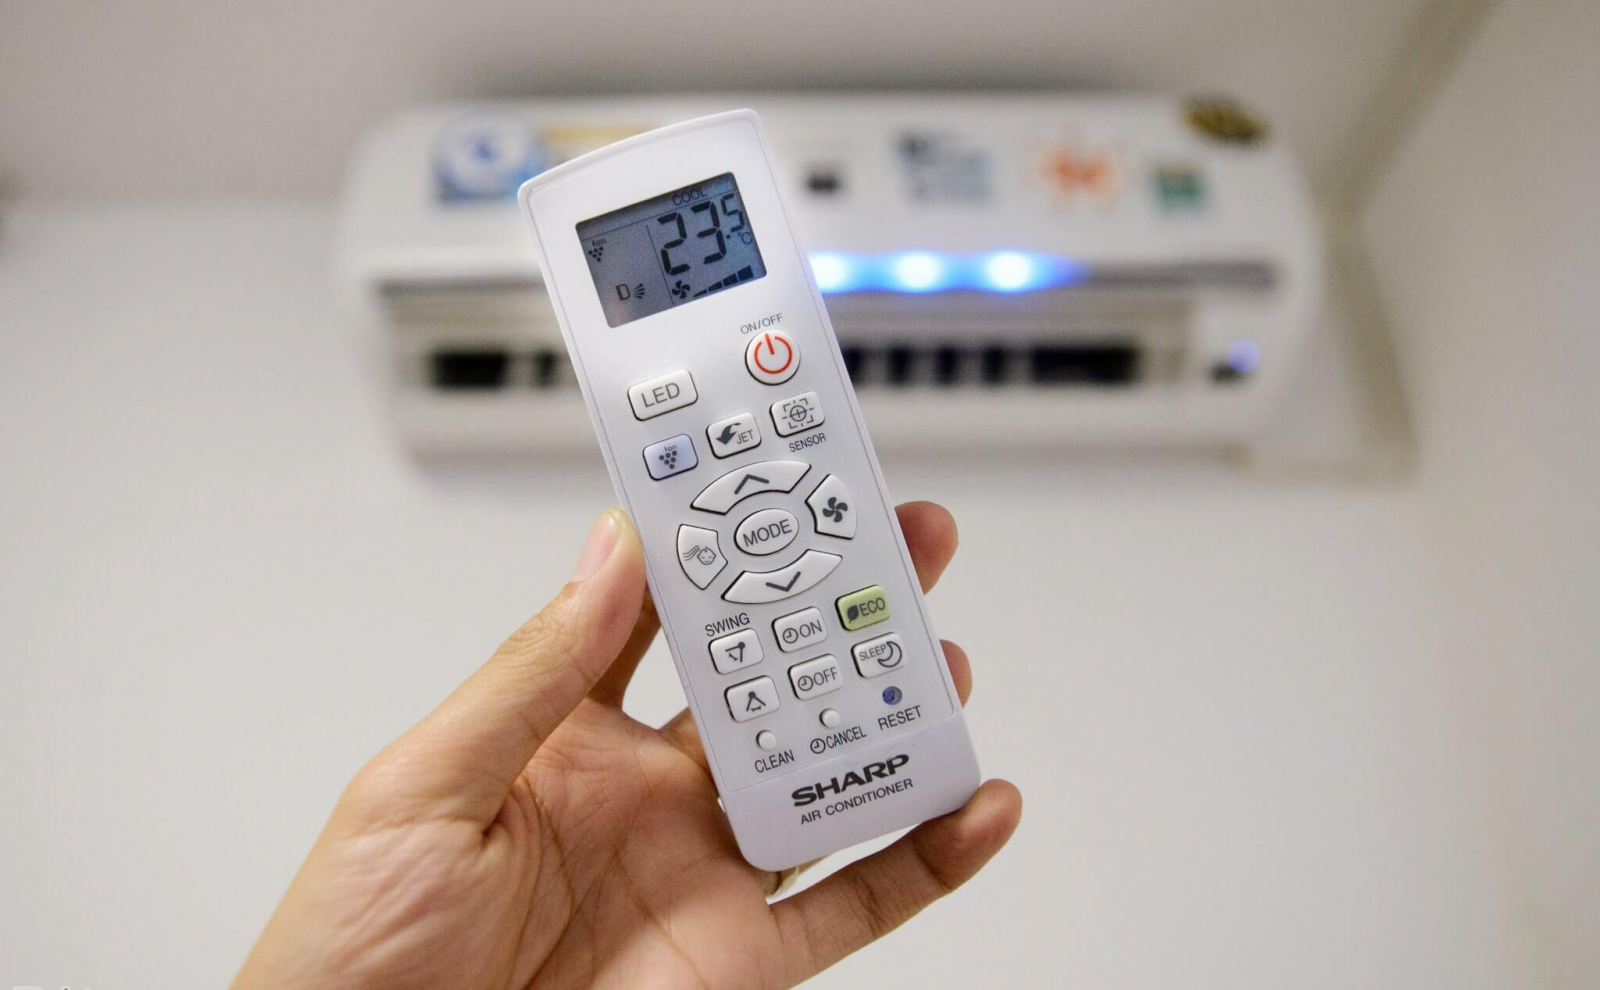 Thay thế remote máy lạnh mới nếu điều khiển điều hòa không hiển thị nhiệt độ